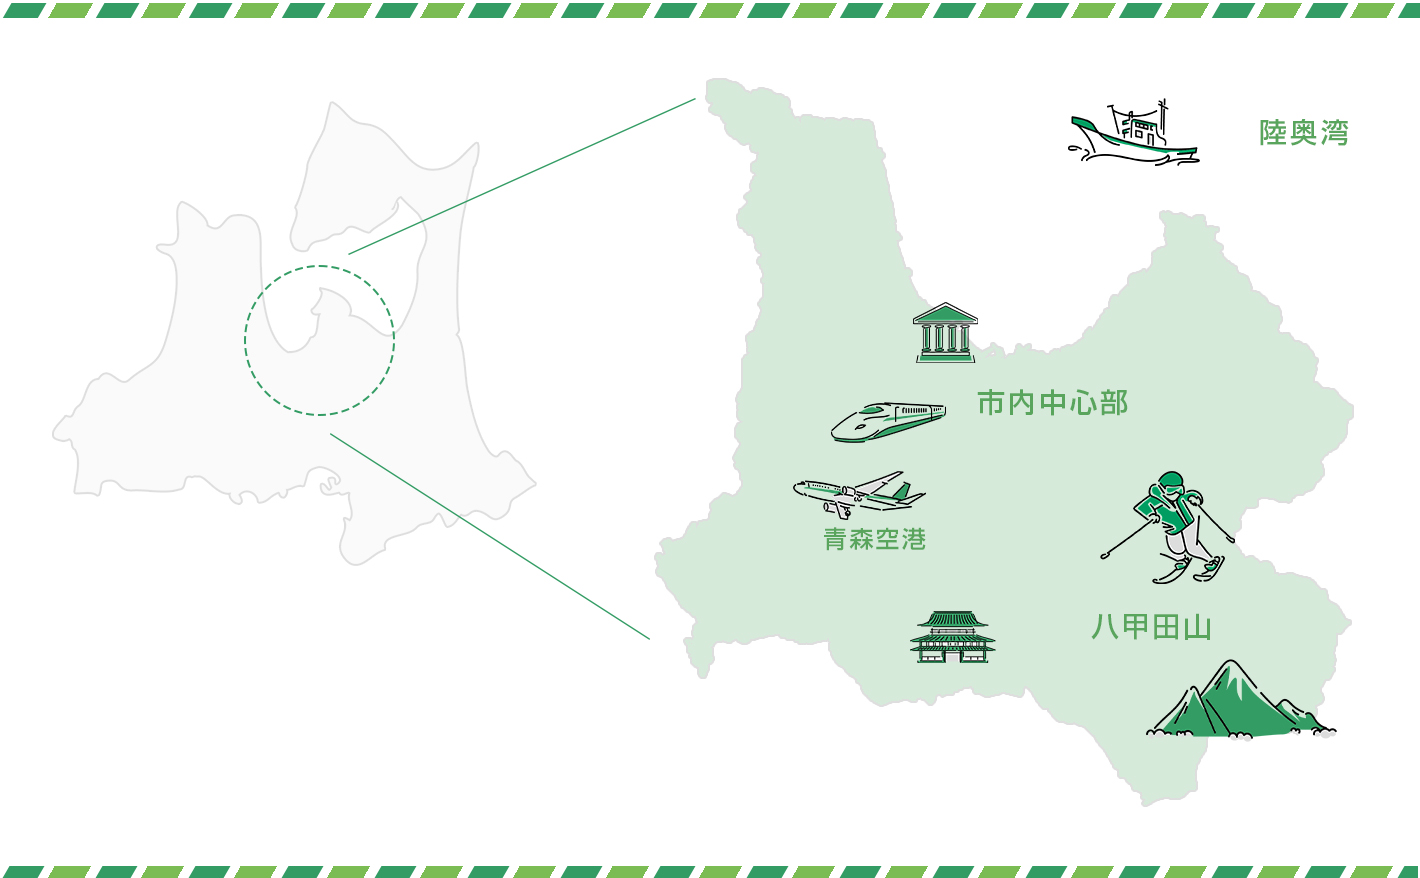 青森県青森市の位置と名産品・名所を示す地図